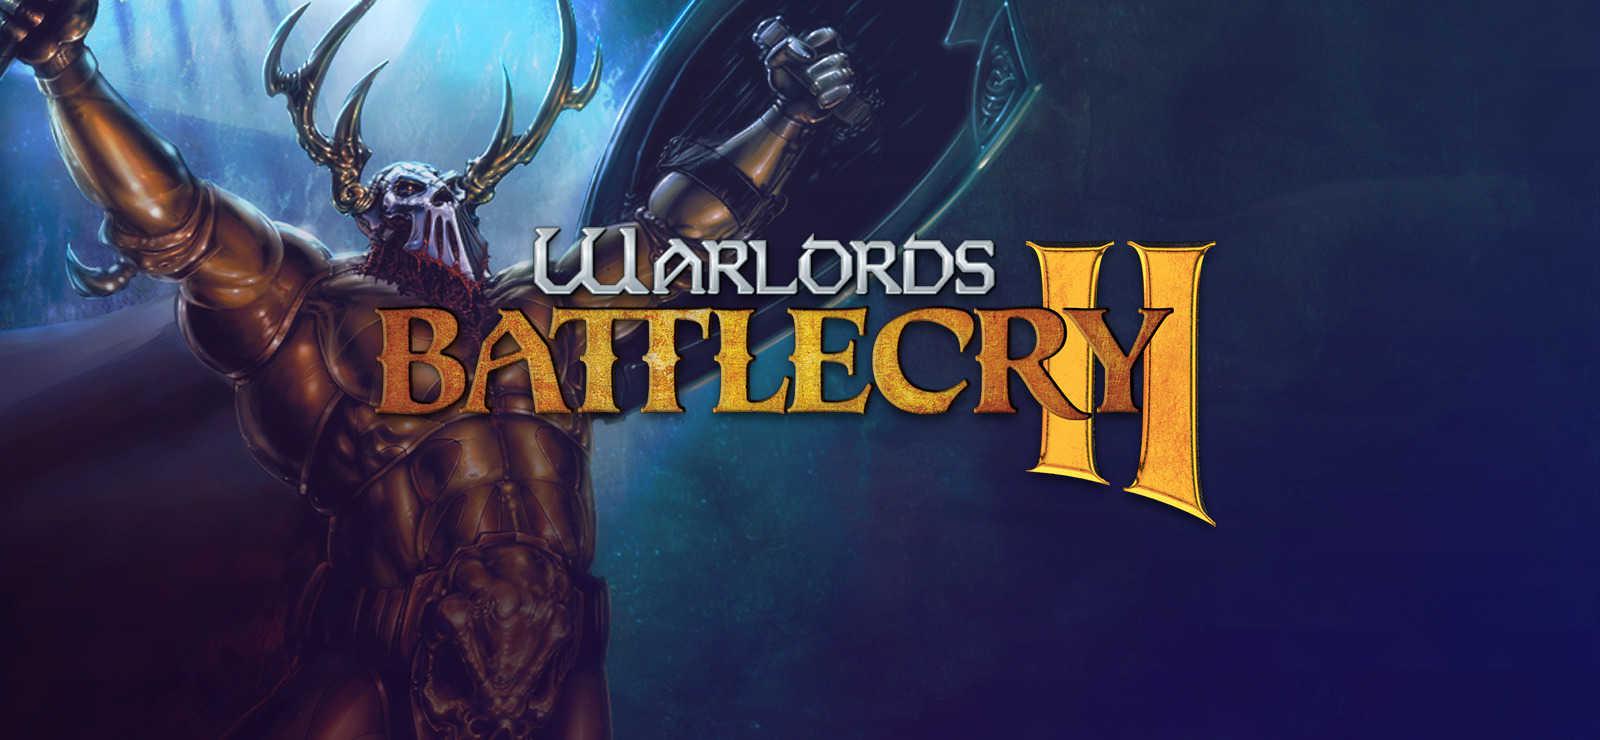 Warllords-Battlecry-ii